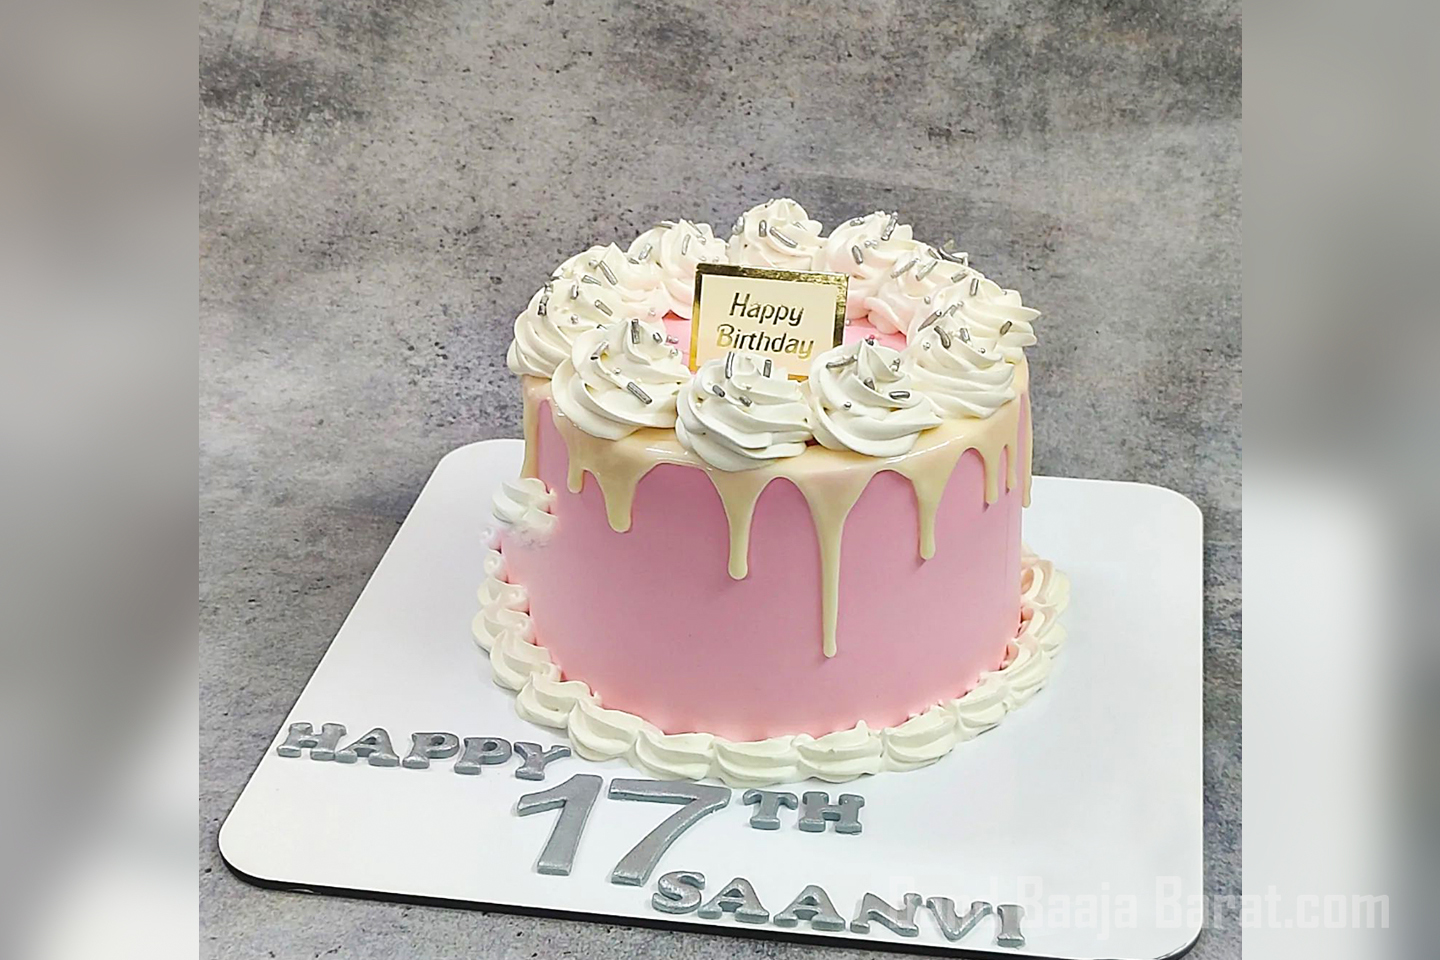 authentique bites designer cakes civil line north delhi